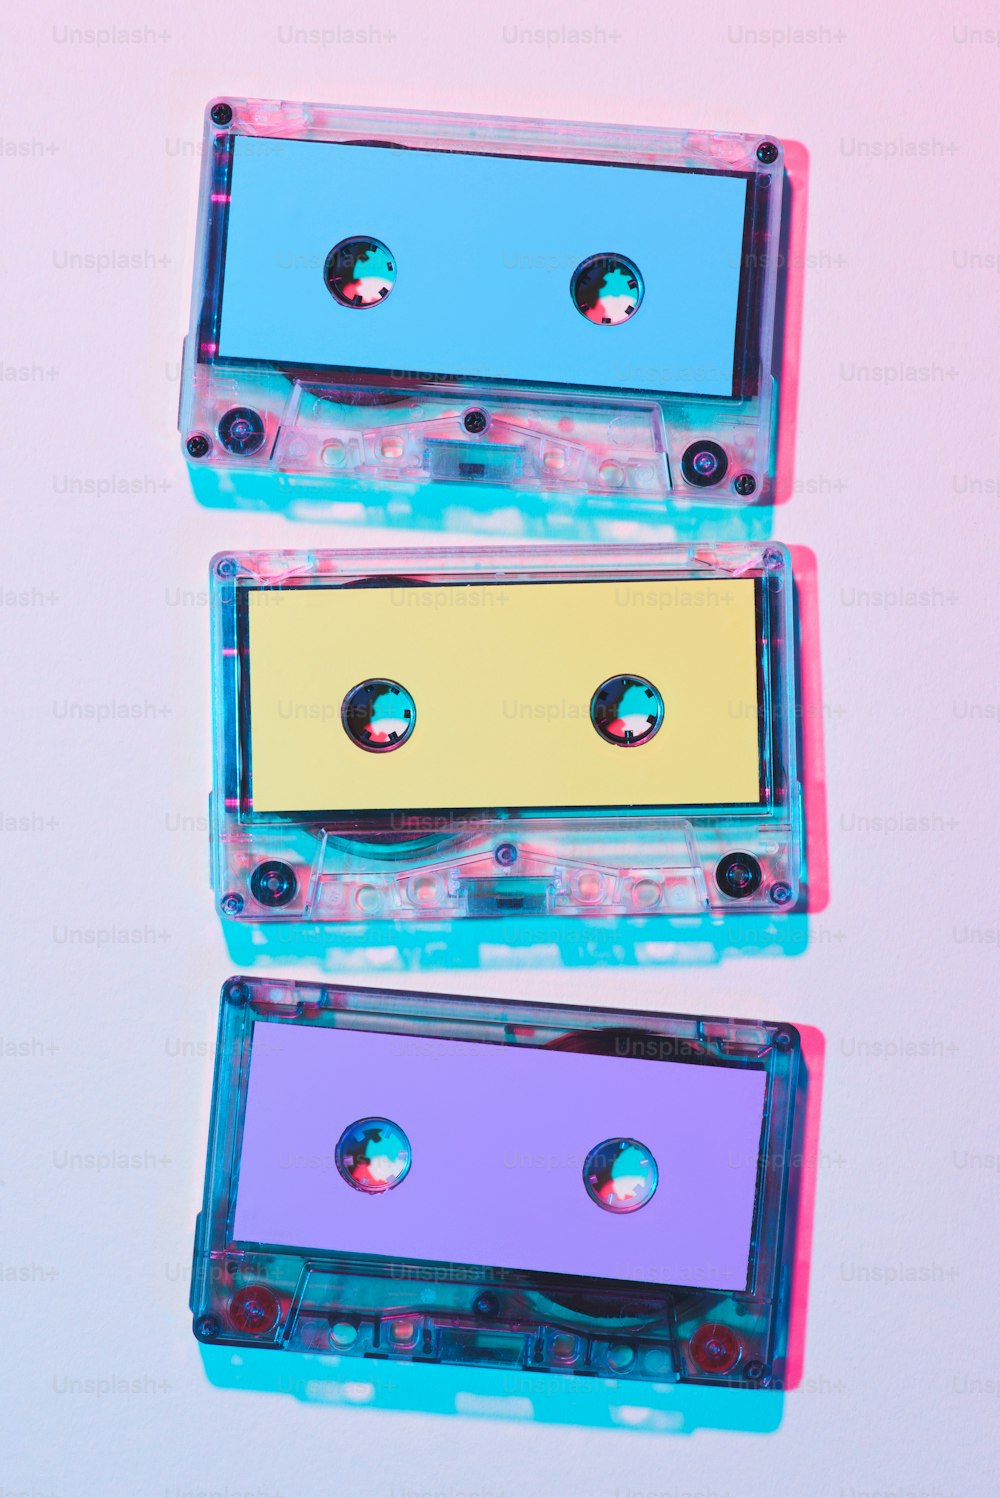 Vue de dessus de cassettes audio colorées arrangées sur fond violet